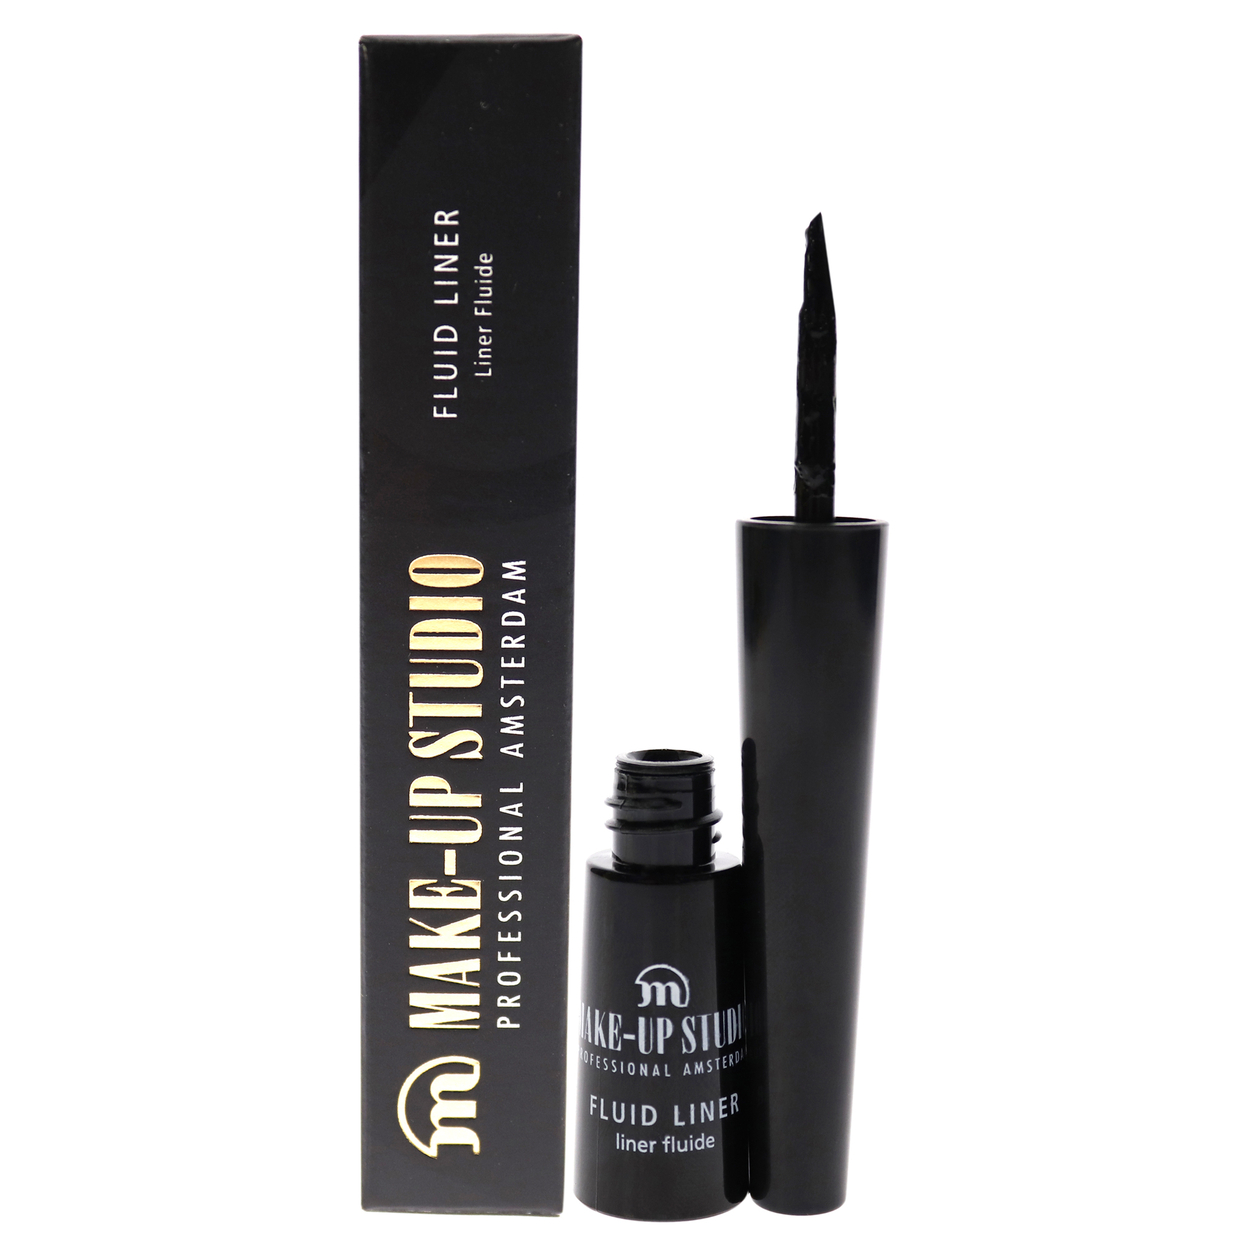 Make-Up Studio Fluid Liner Eyeliner - Sparkling Black 0.08 Oz